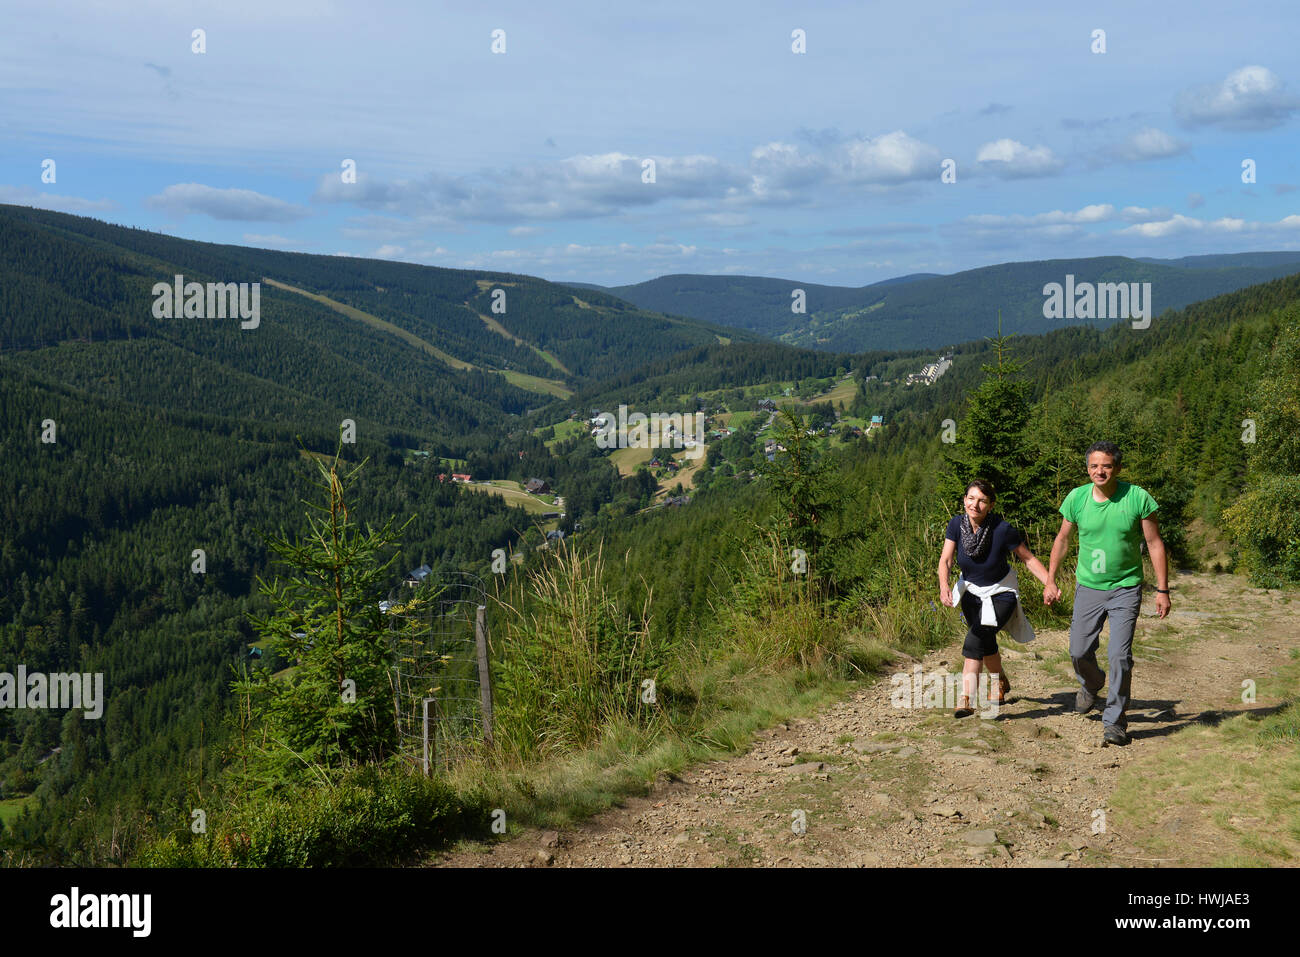 Wanderweg zum Berg Krakonos, Riesengebirge, Tschechien Stock Photo